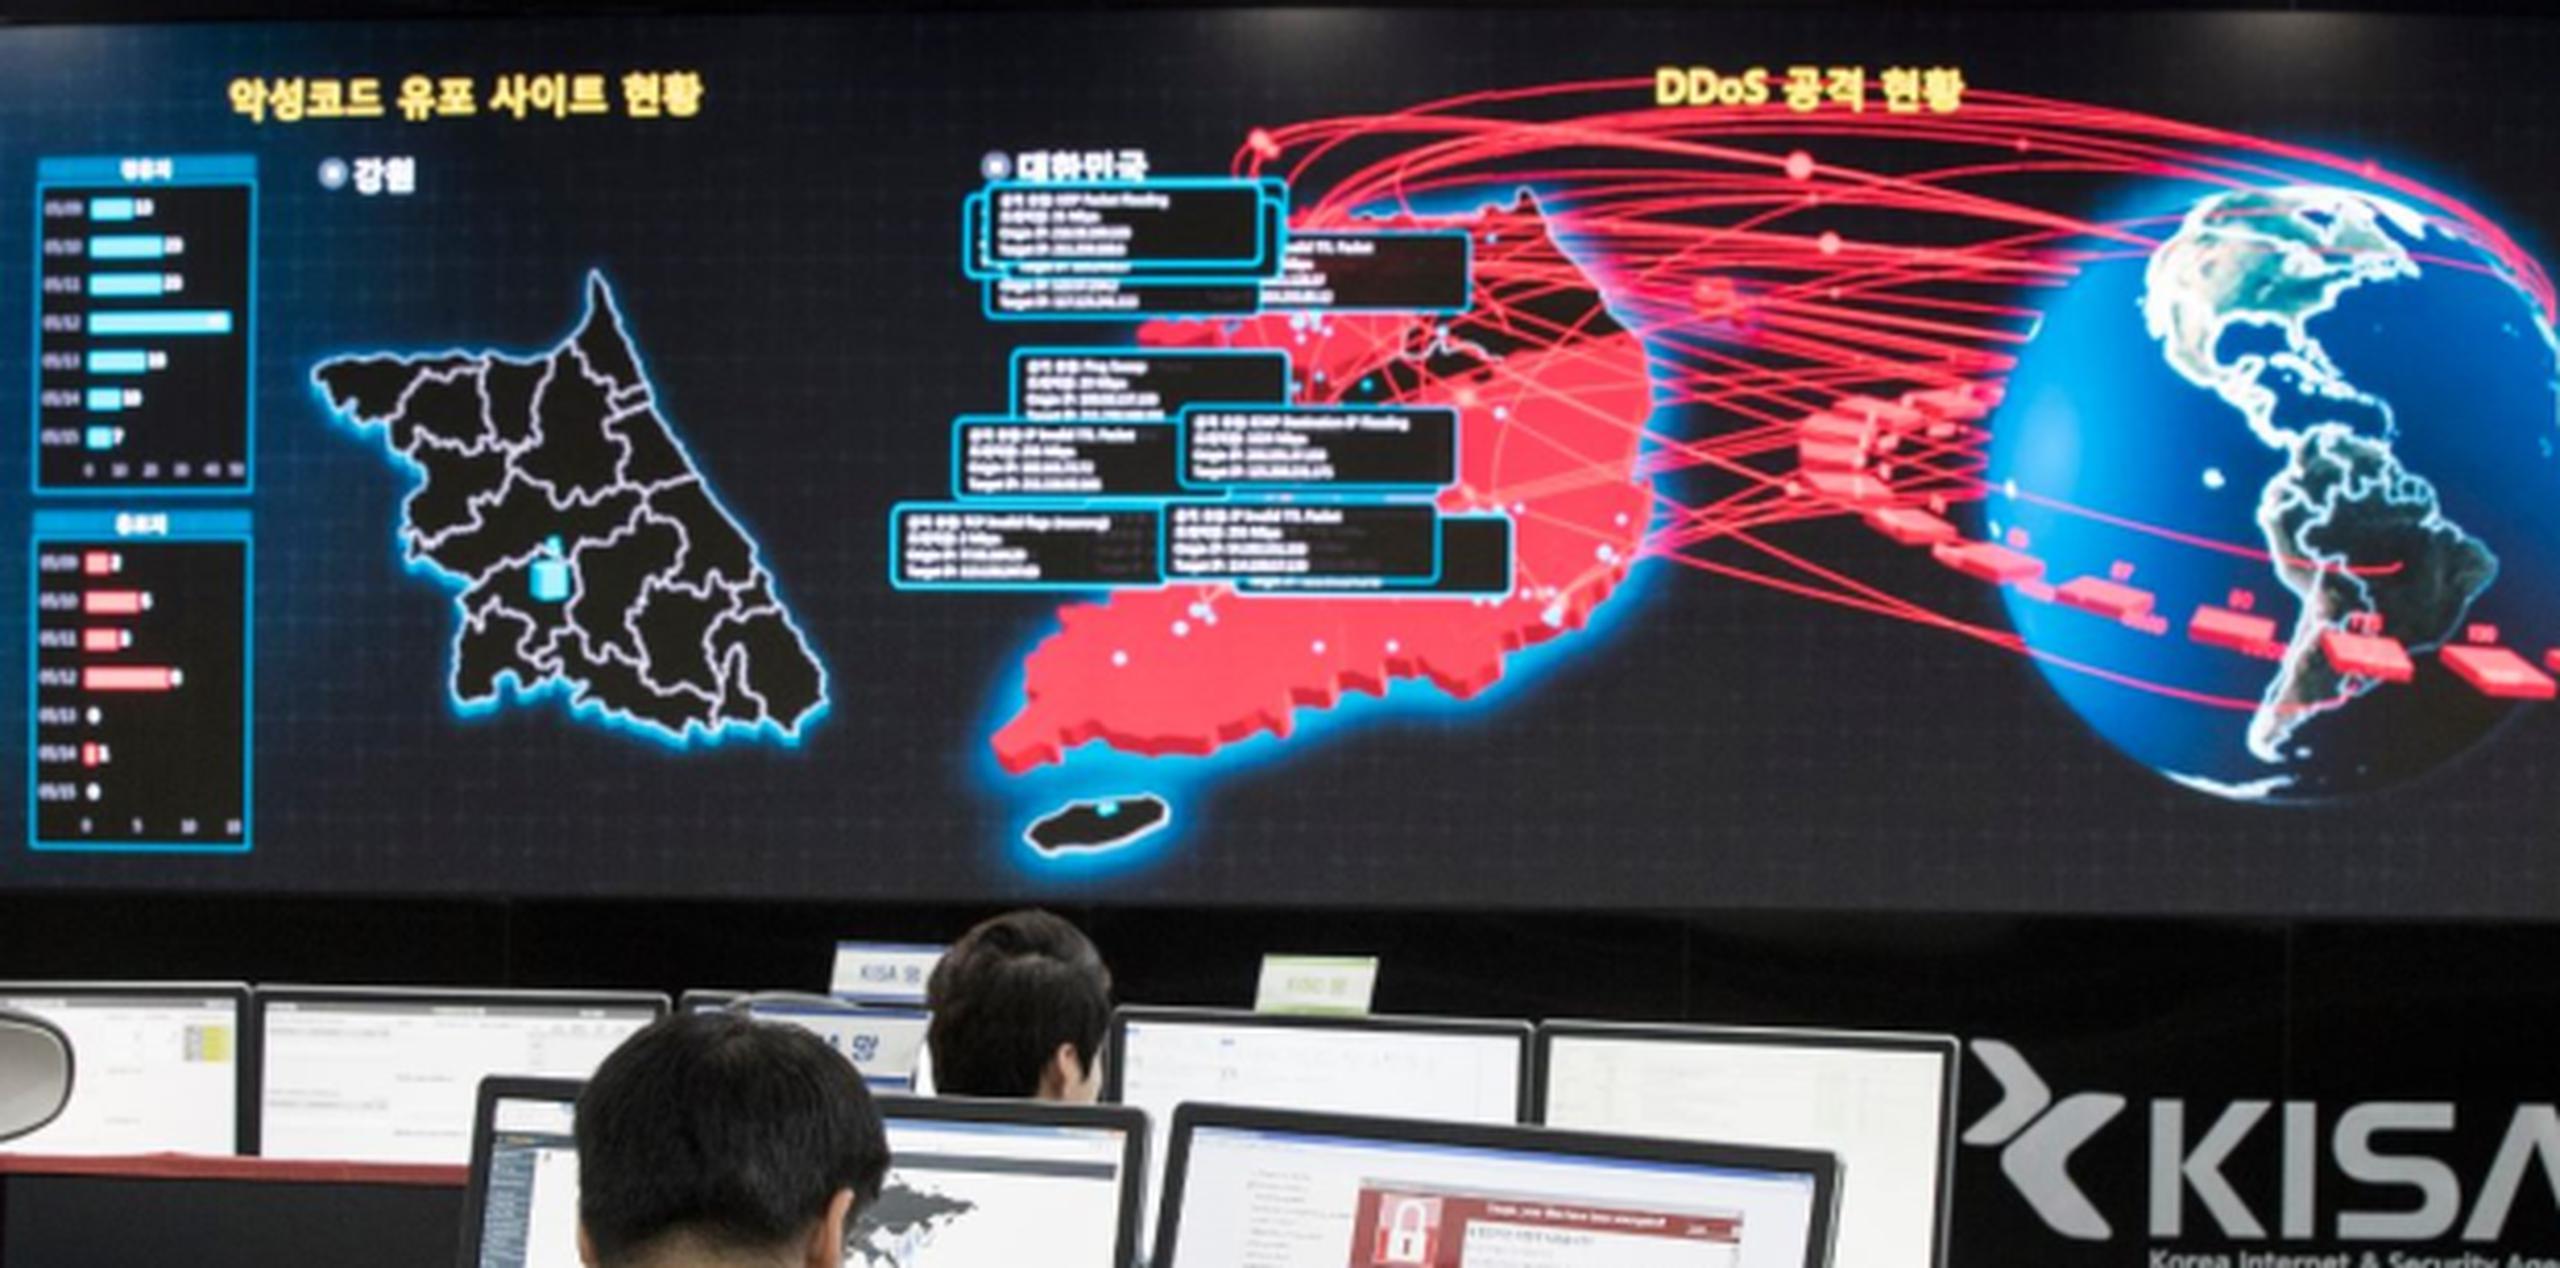 El investigador de Google Neel Mehta identificó similitudes de codificación entre WannaCry y programas maliciosos de 2015 vinculados con Corea del Norte. (AP)